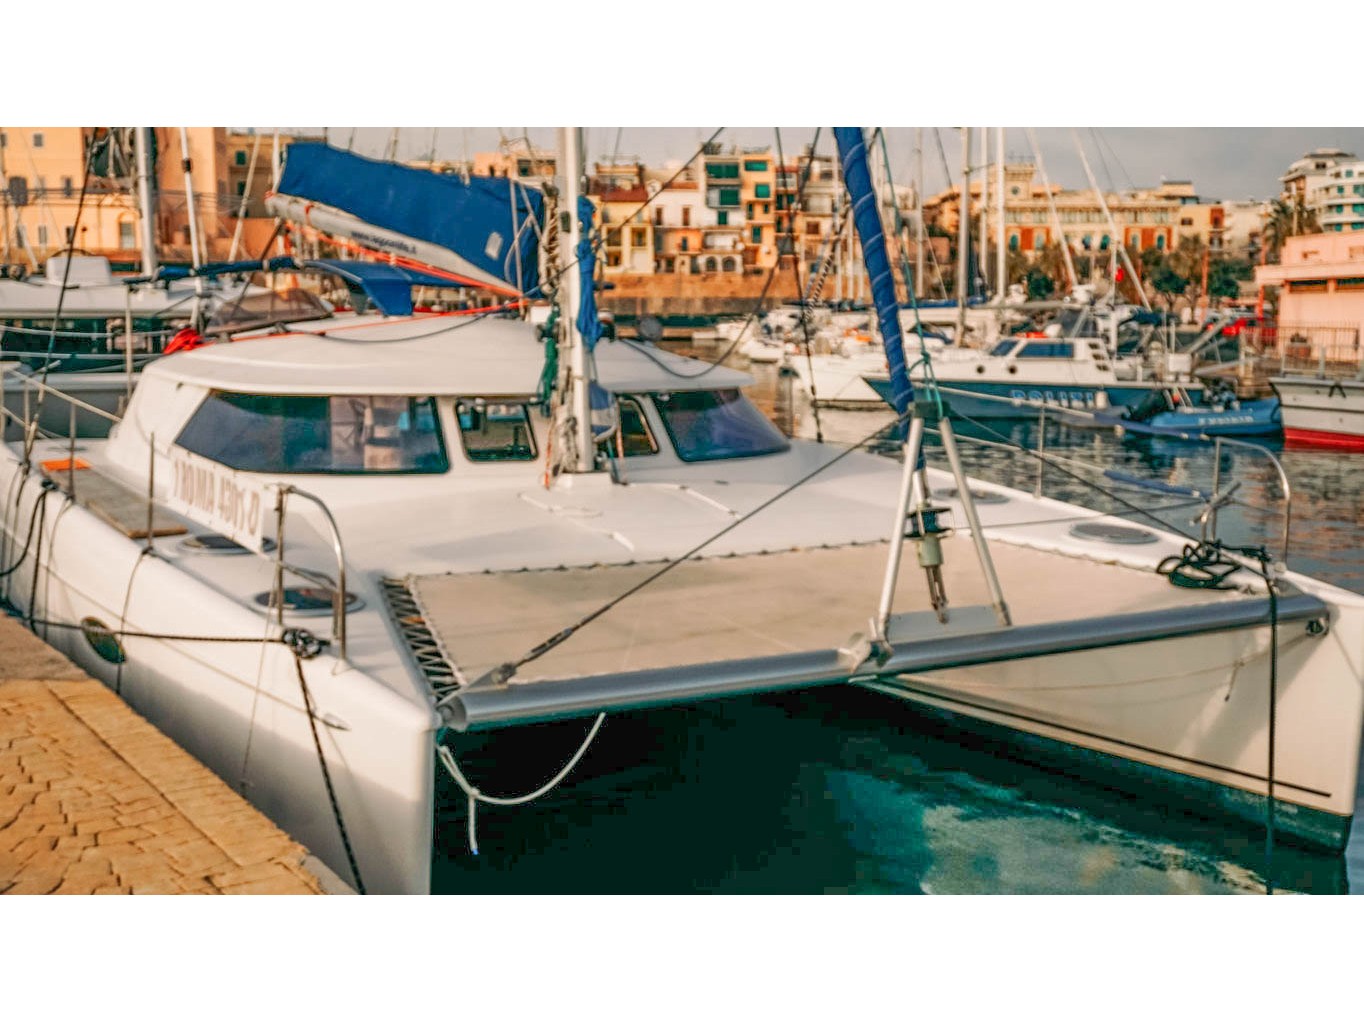 Lavezzi 40 - Yacht Charter Nettuno & Boat hire in Italy Rome Anzio Marina di Nettuno 3